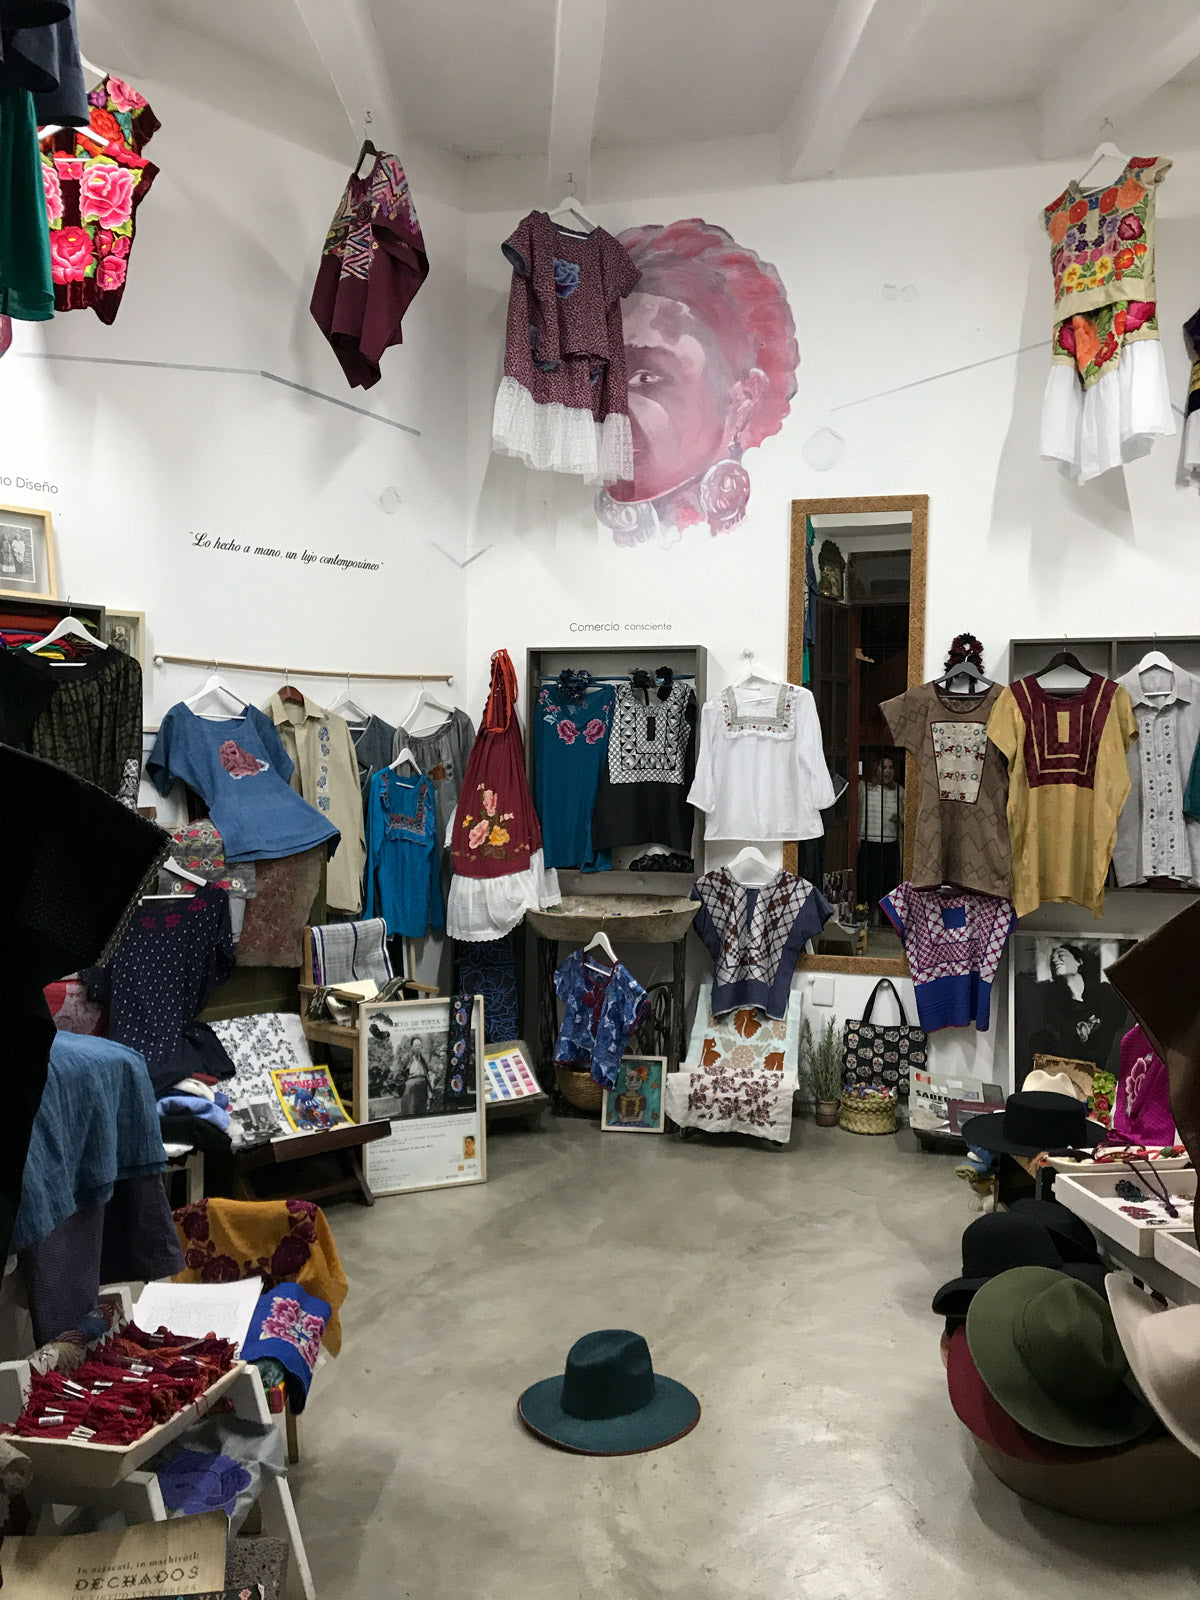 The inside of a dress store in Oaxaca